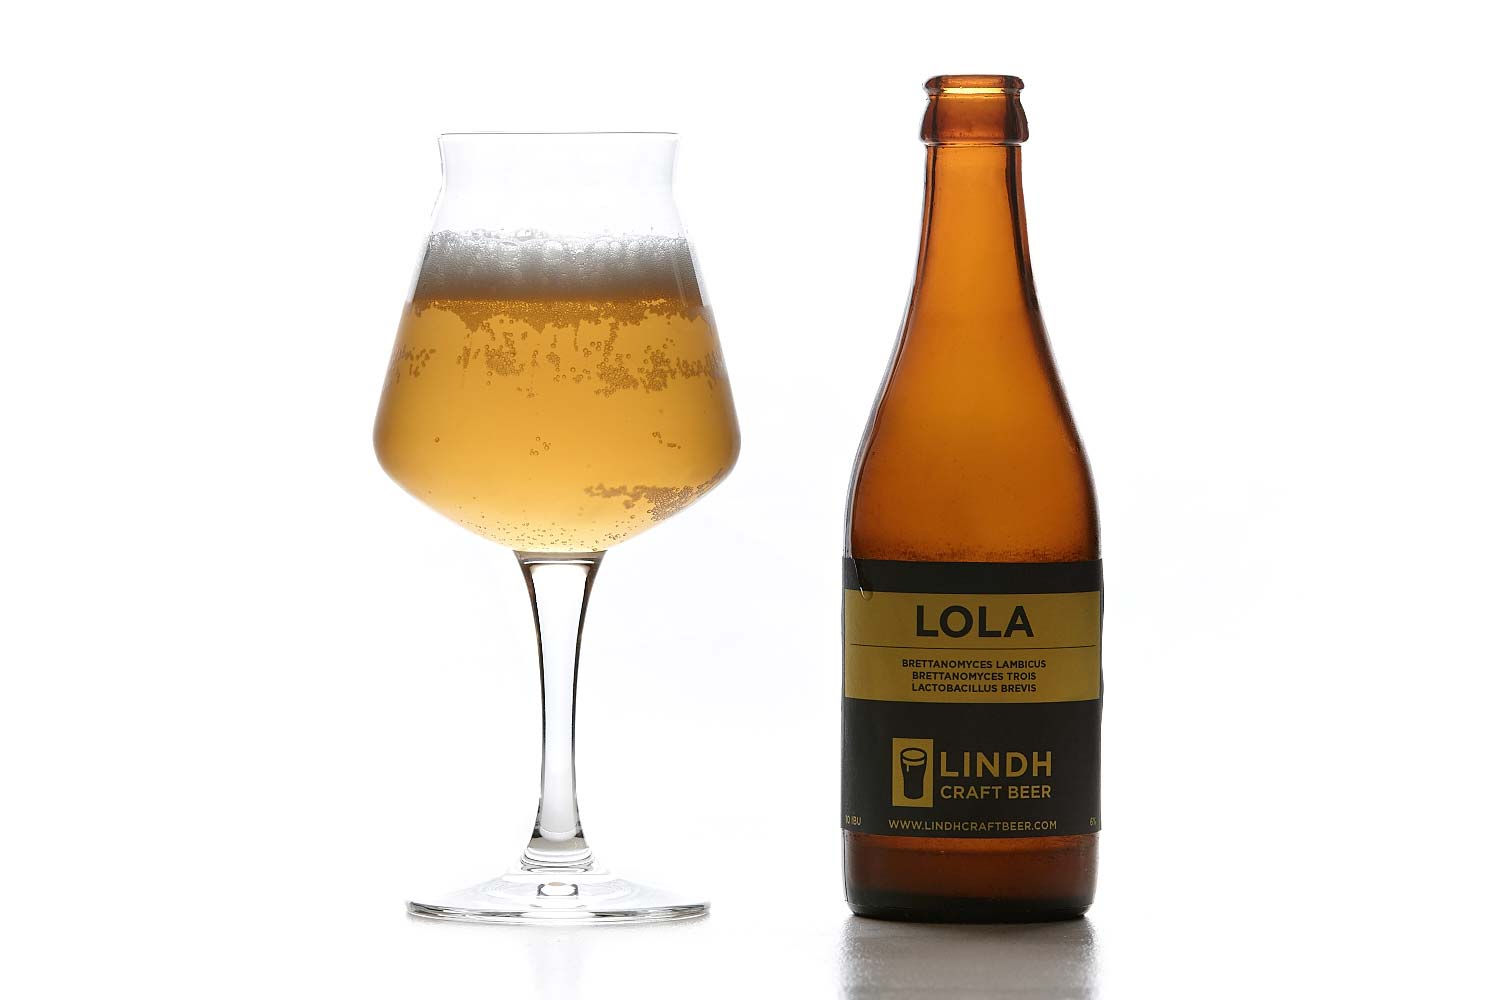 150712_lindh_craft_beer_lola